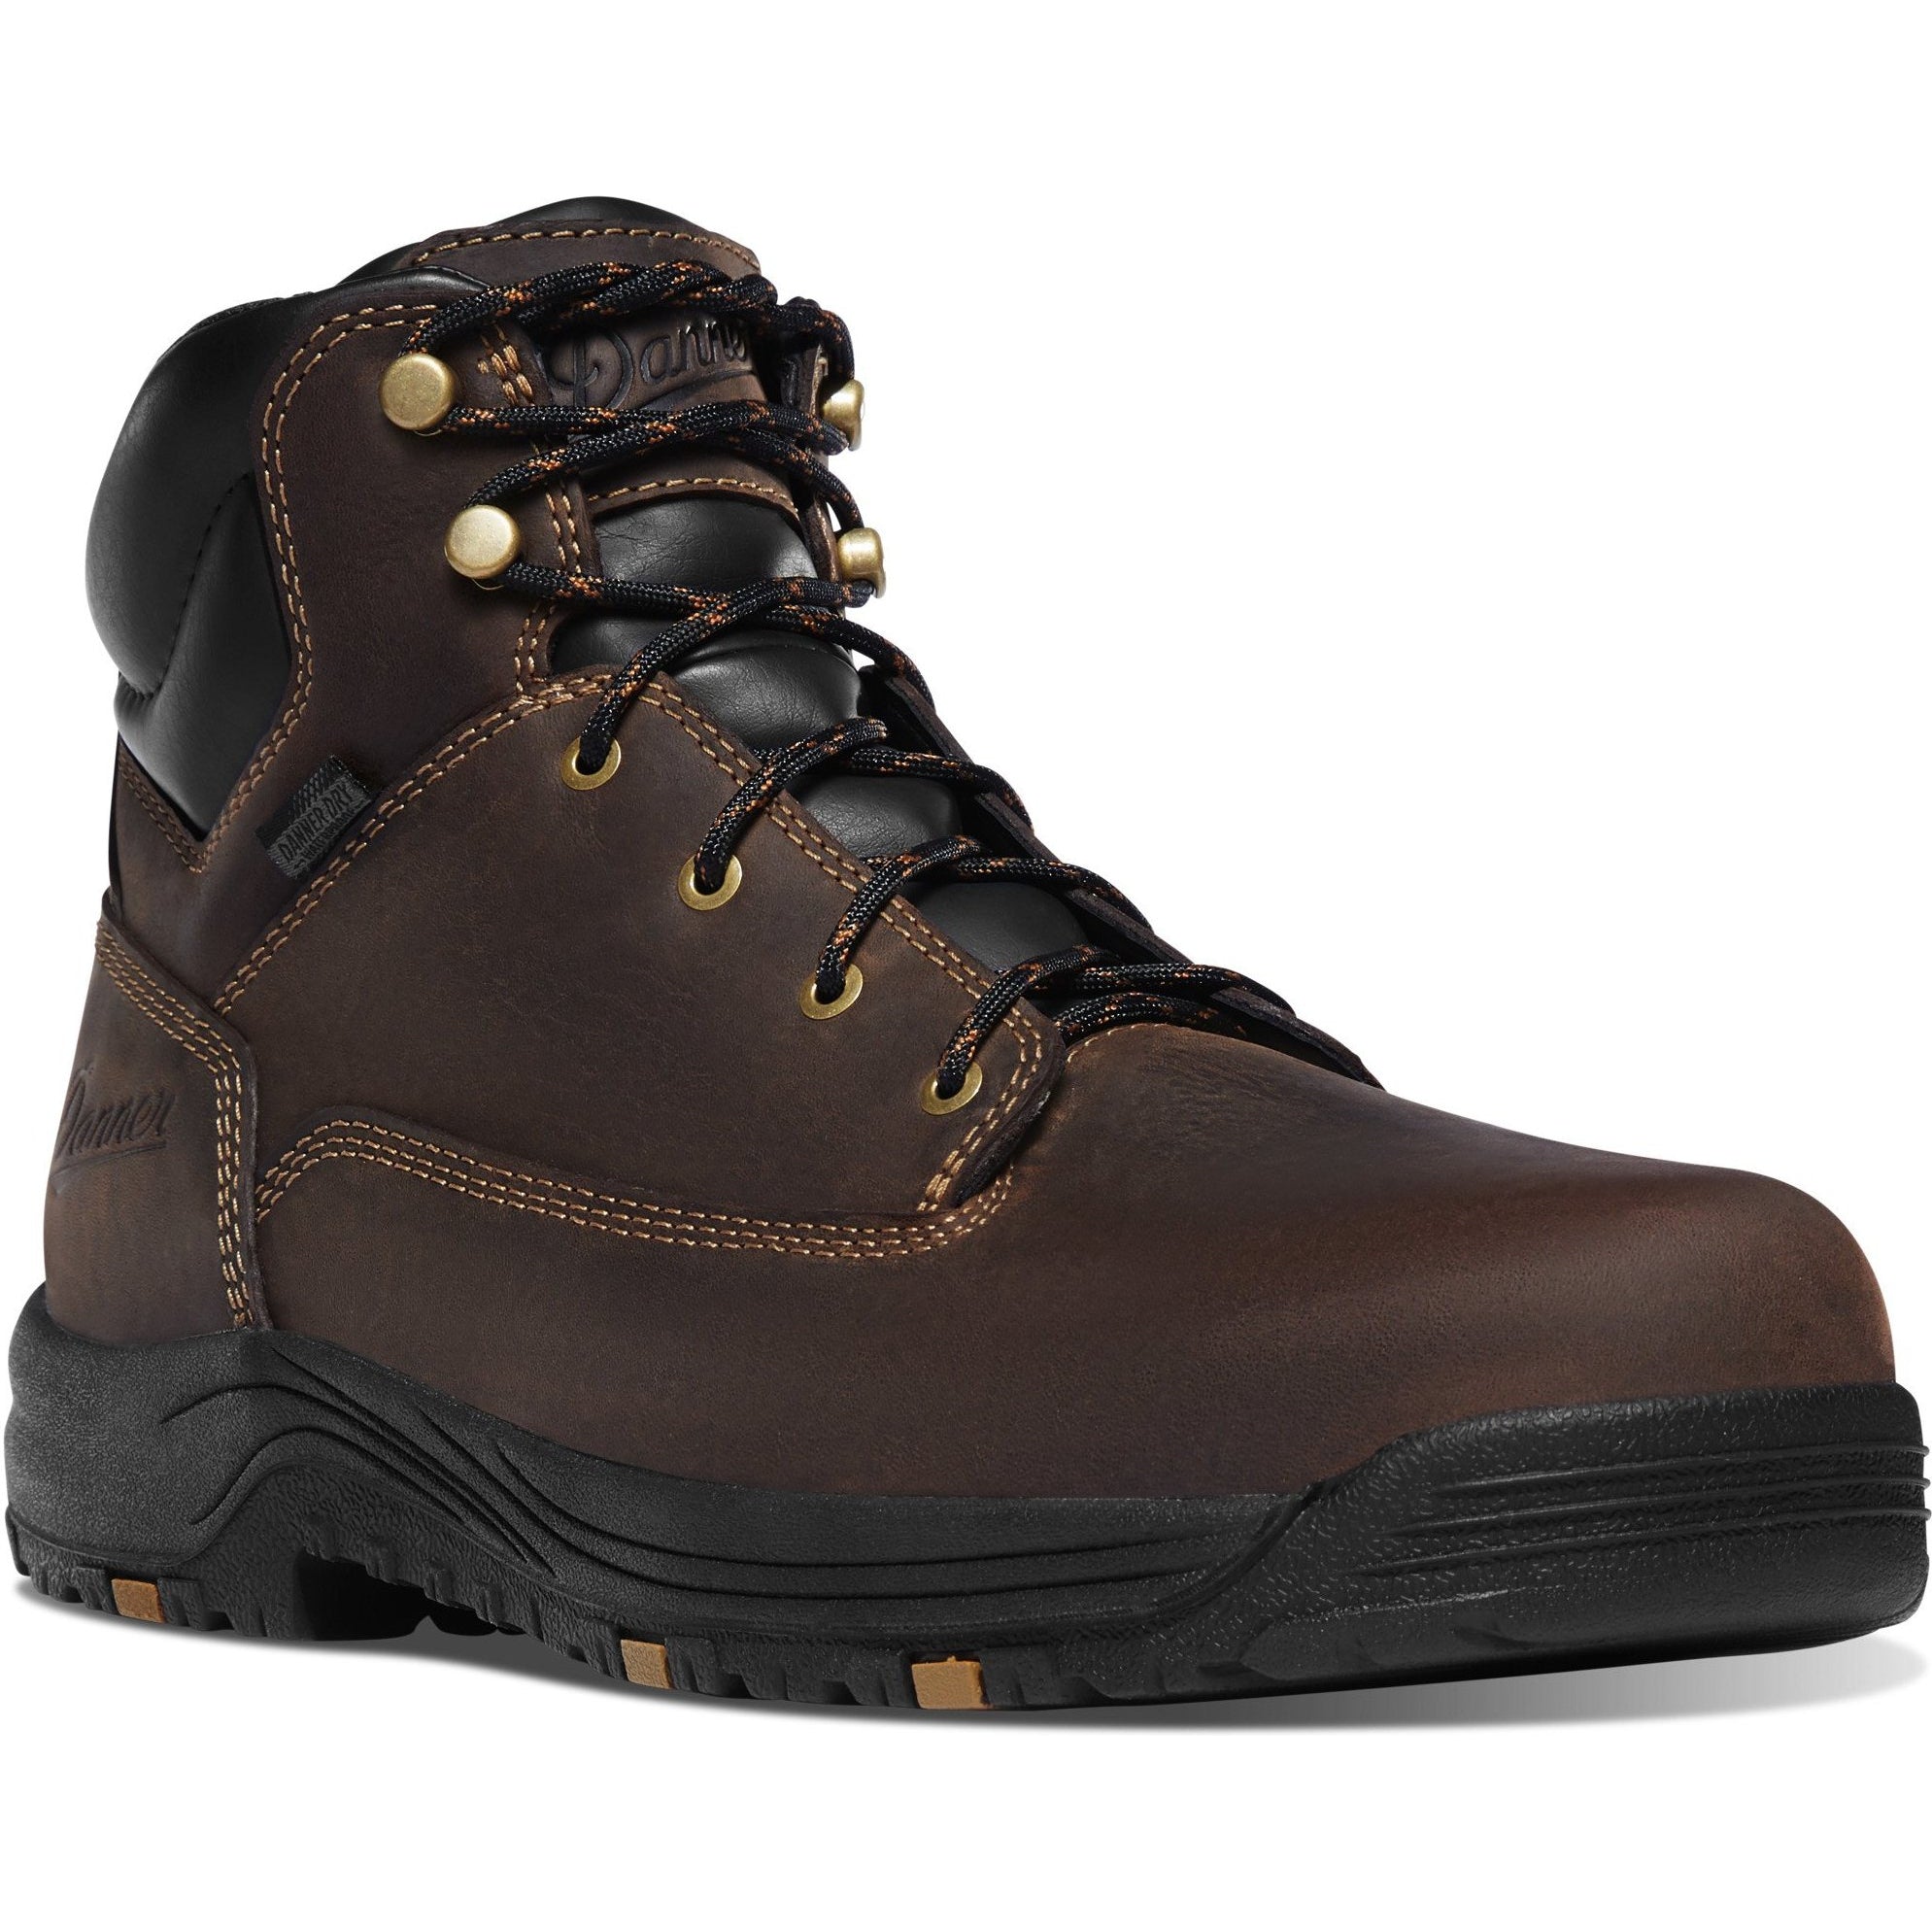 Danner Men's Caliper 6" Soft Toe WP Work Boot - Brown - 19452 7 / Medium / Brown - Overlook Boots